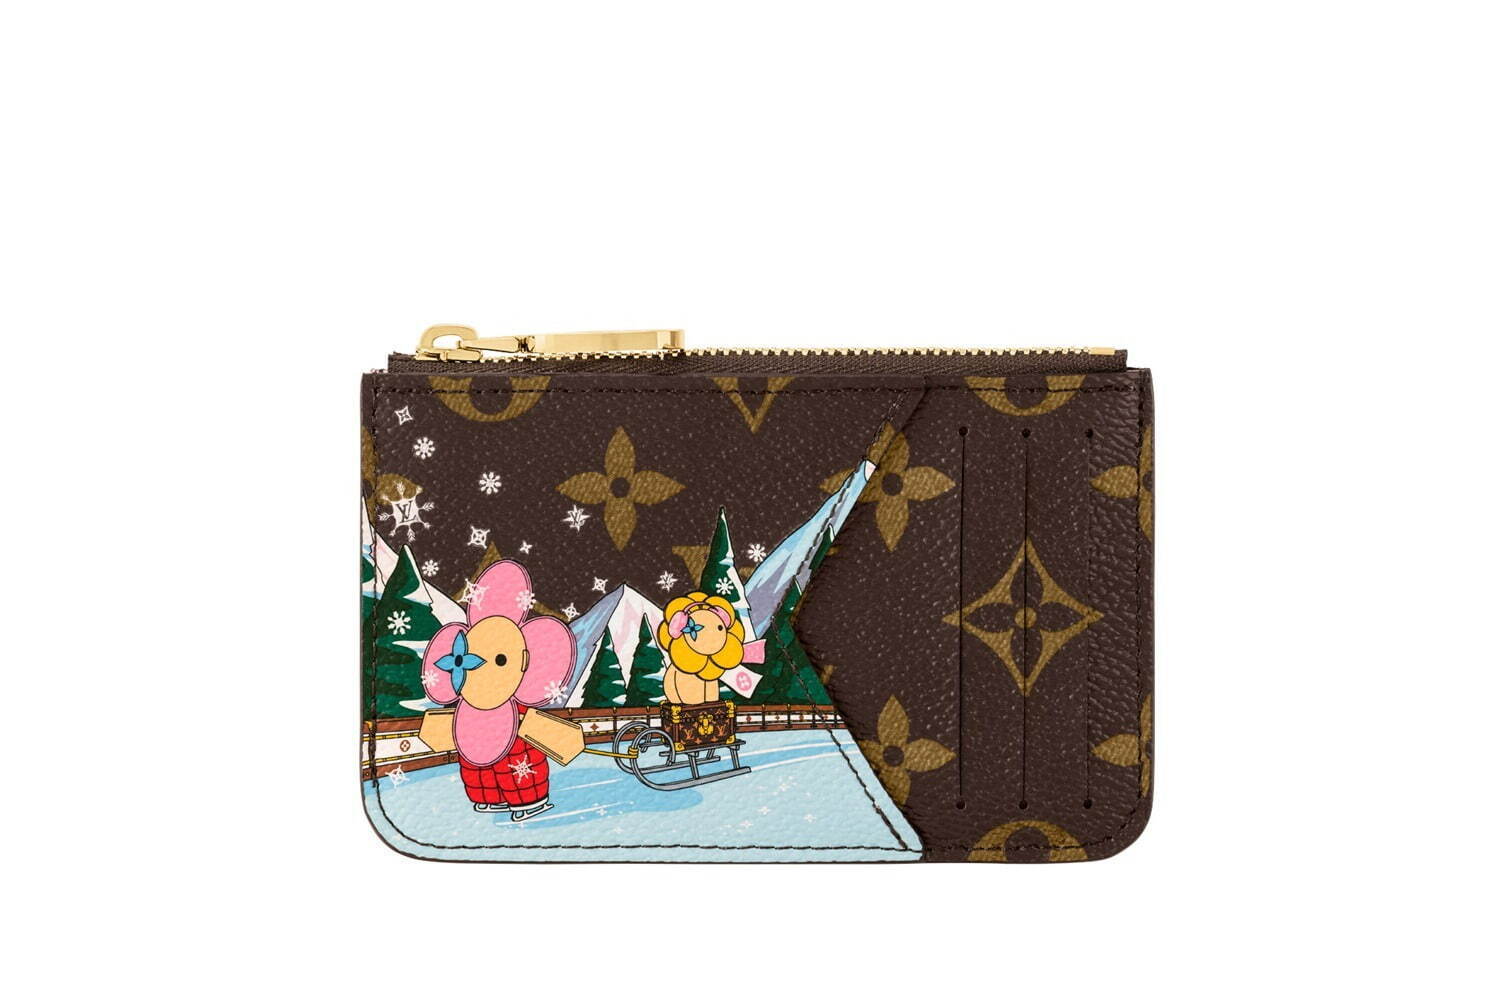 ルイ・ヴィトンの年クリスマス、マスコットヴィヴィエンヌの財布